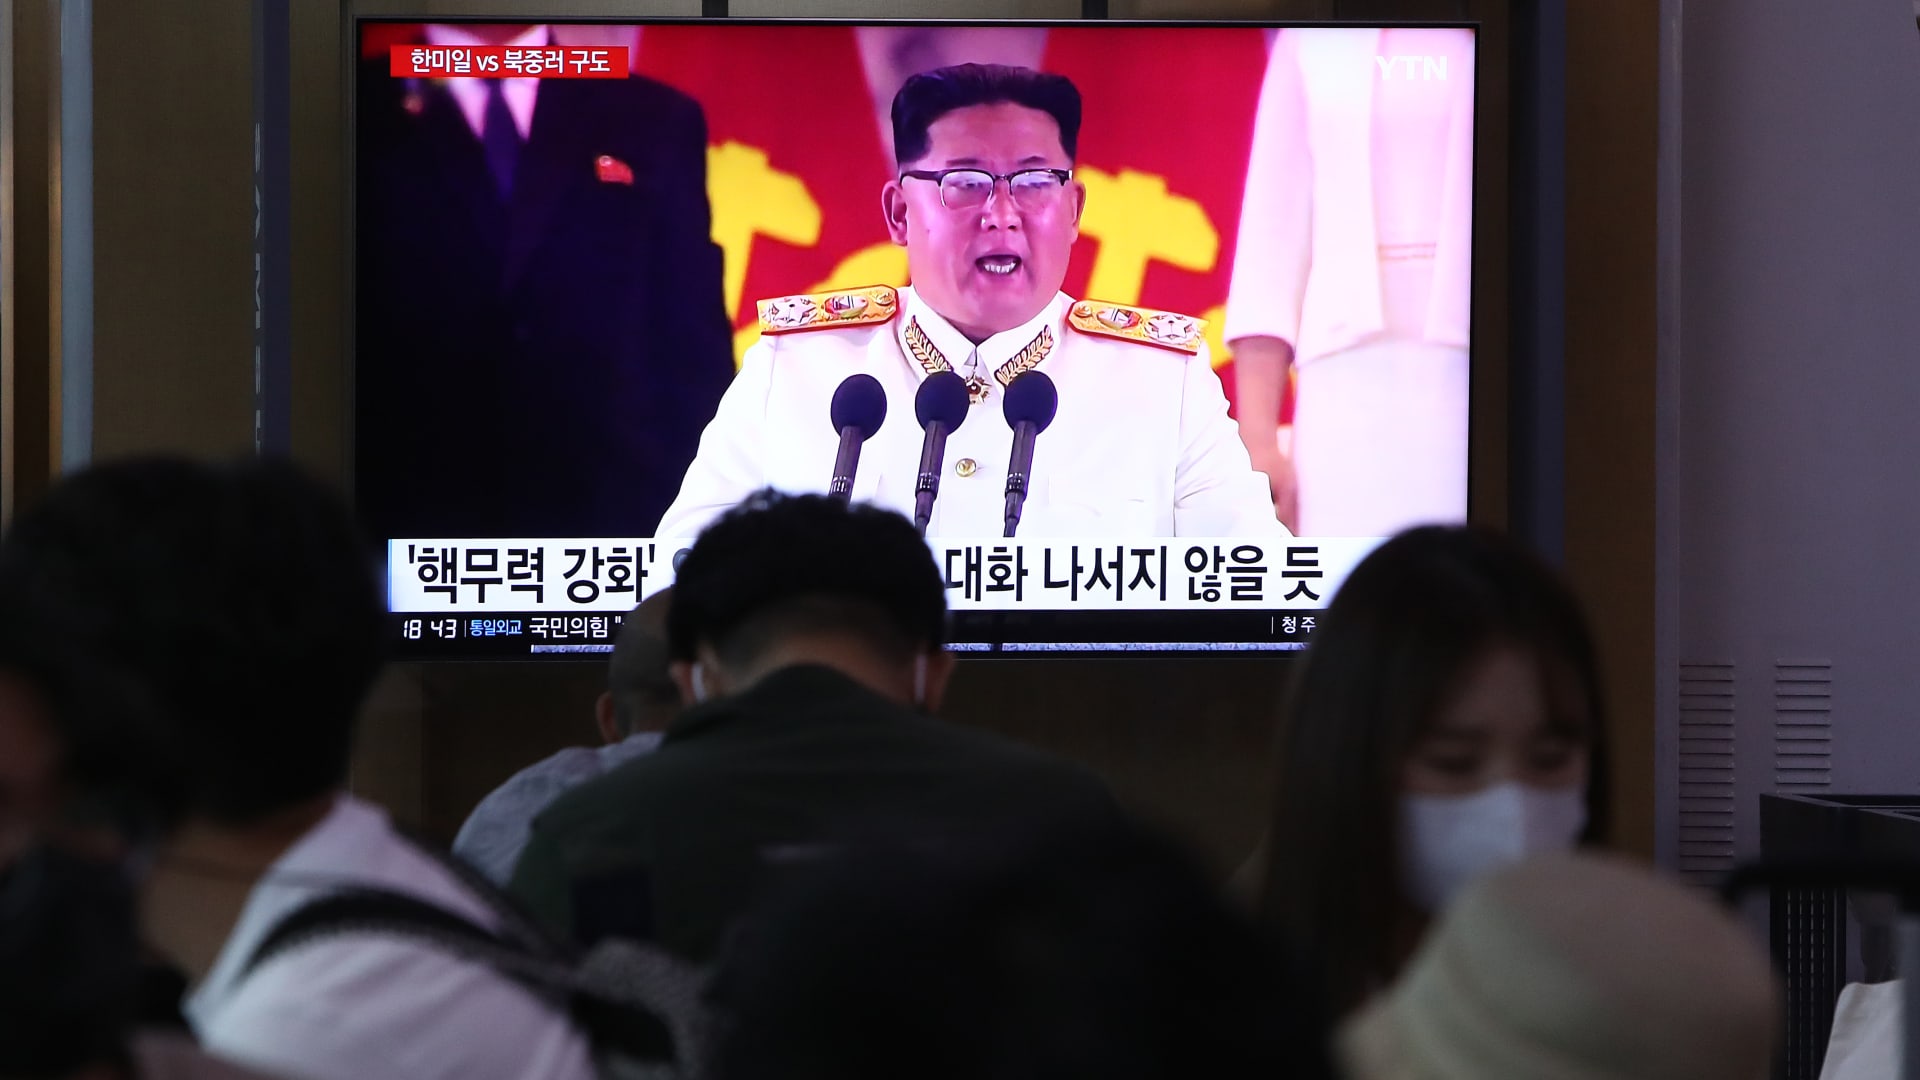 صورة أرشيفية لخطاب ألقاه زعيم كوريا الشمالية كيم جونغ أون